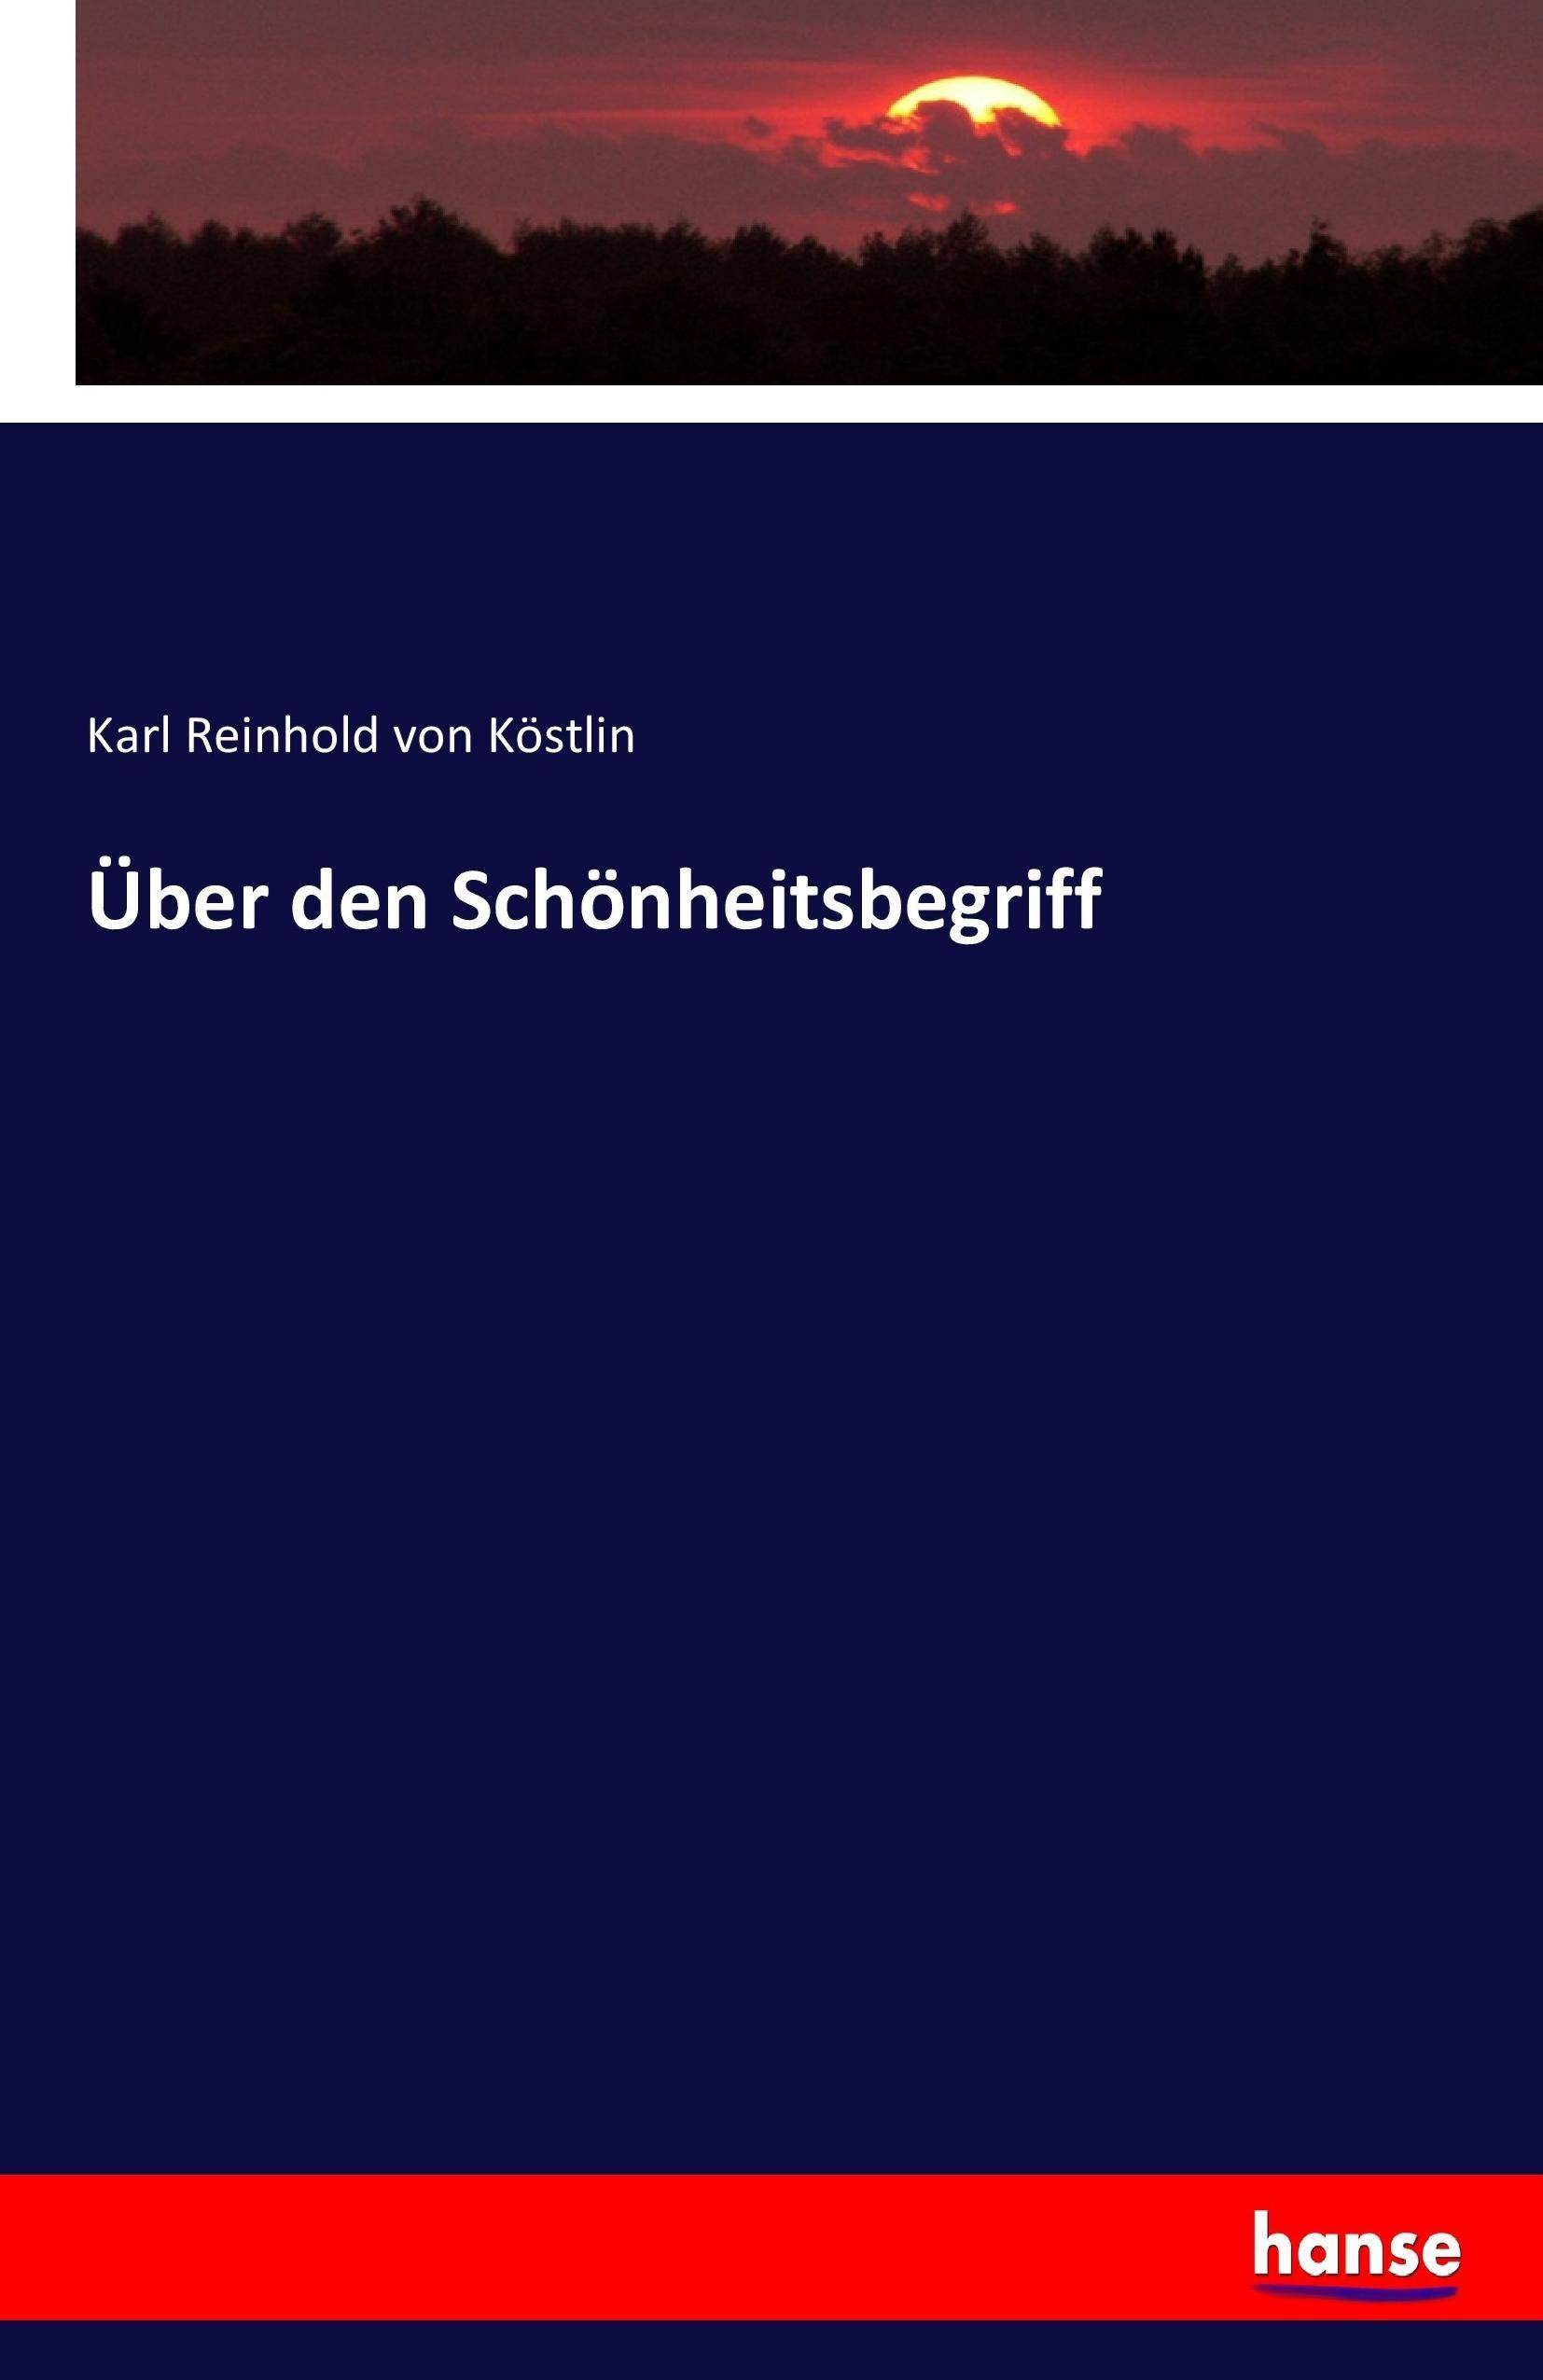 Ueber den Schoenheitsbegriff - Koestlin, Karl Reinhold von